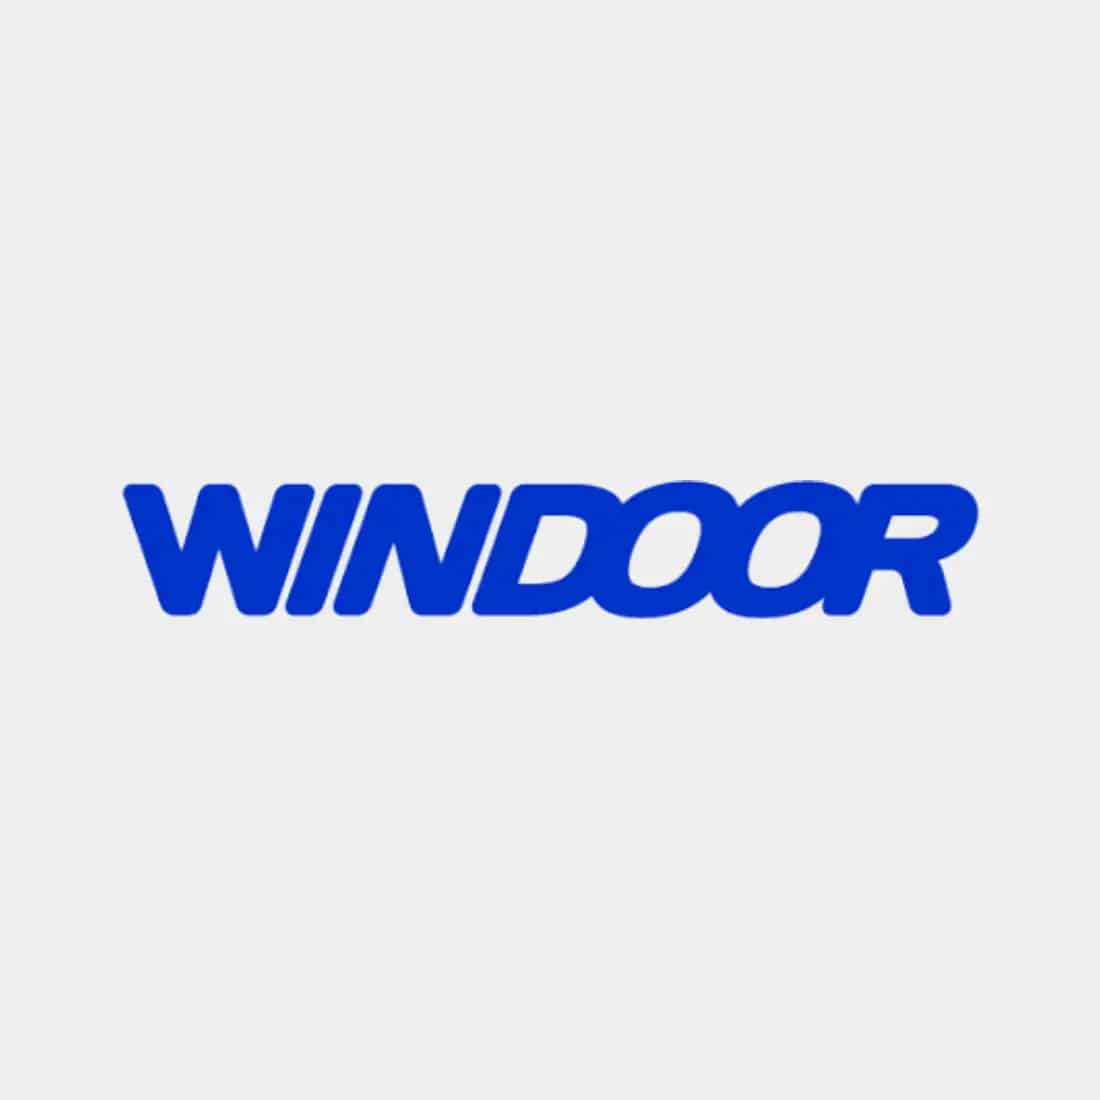 heading2market Caso de éxito: Windoor Realfly